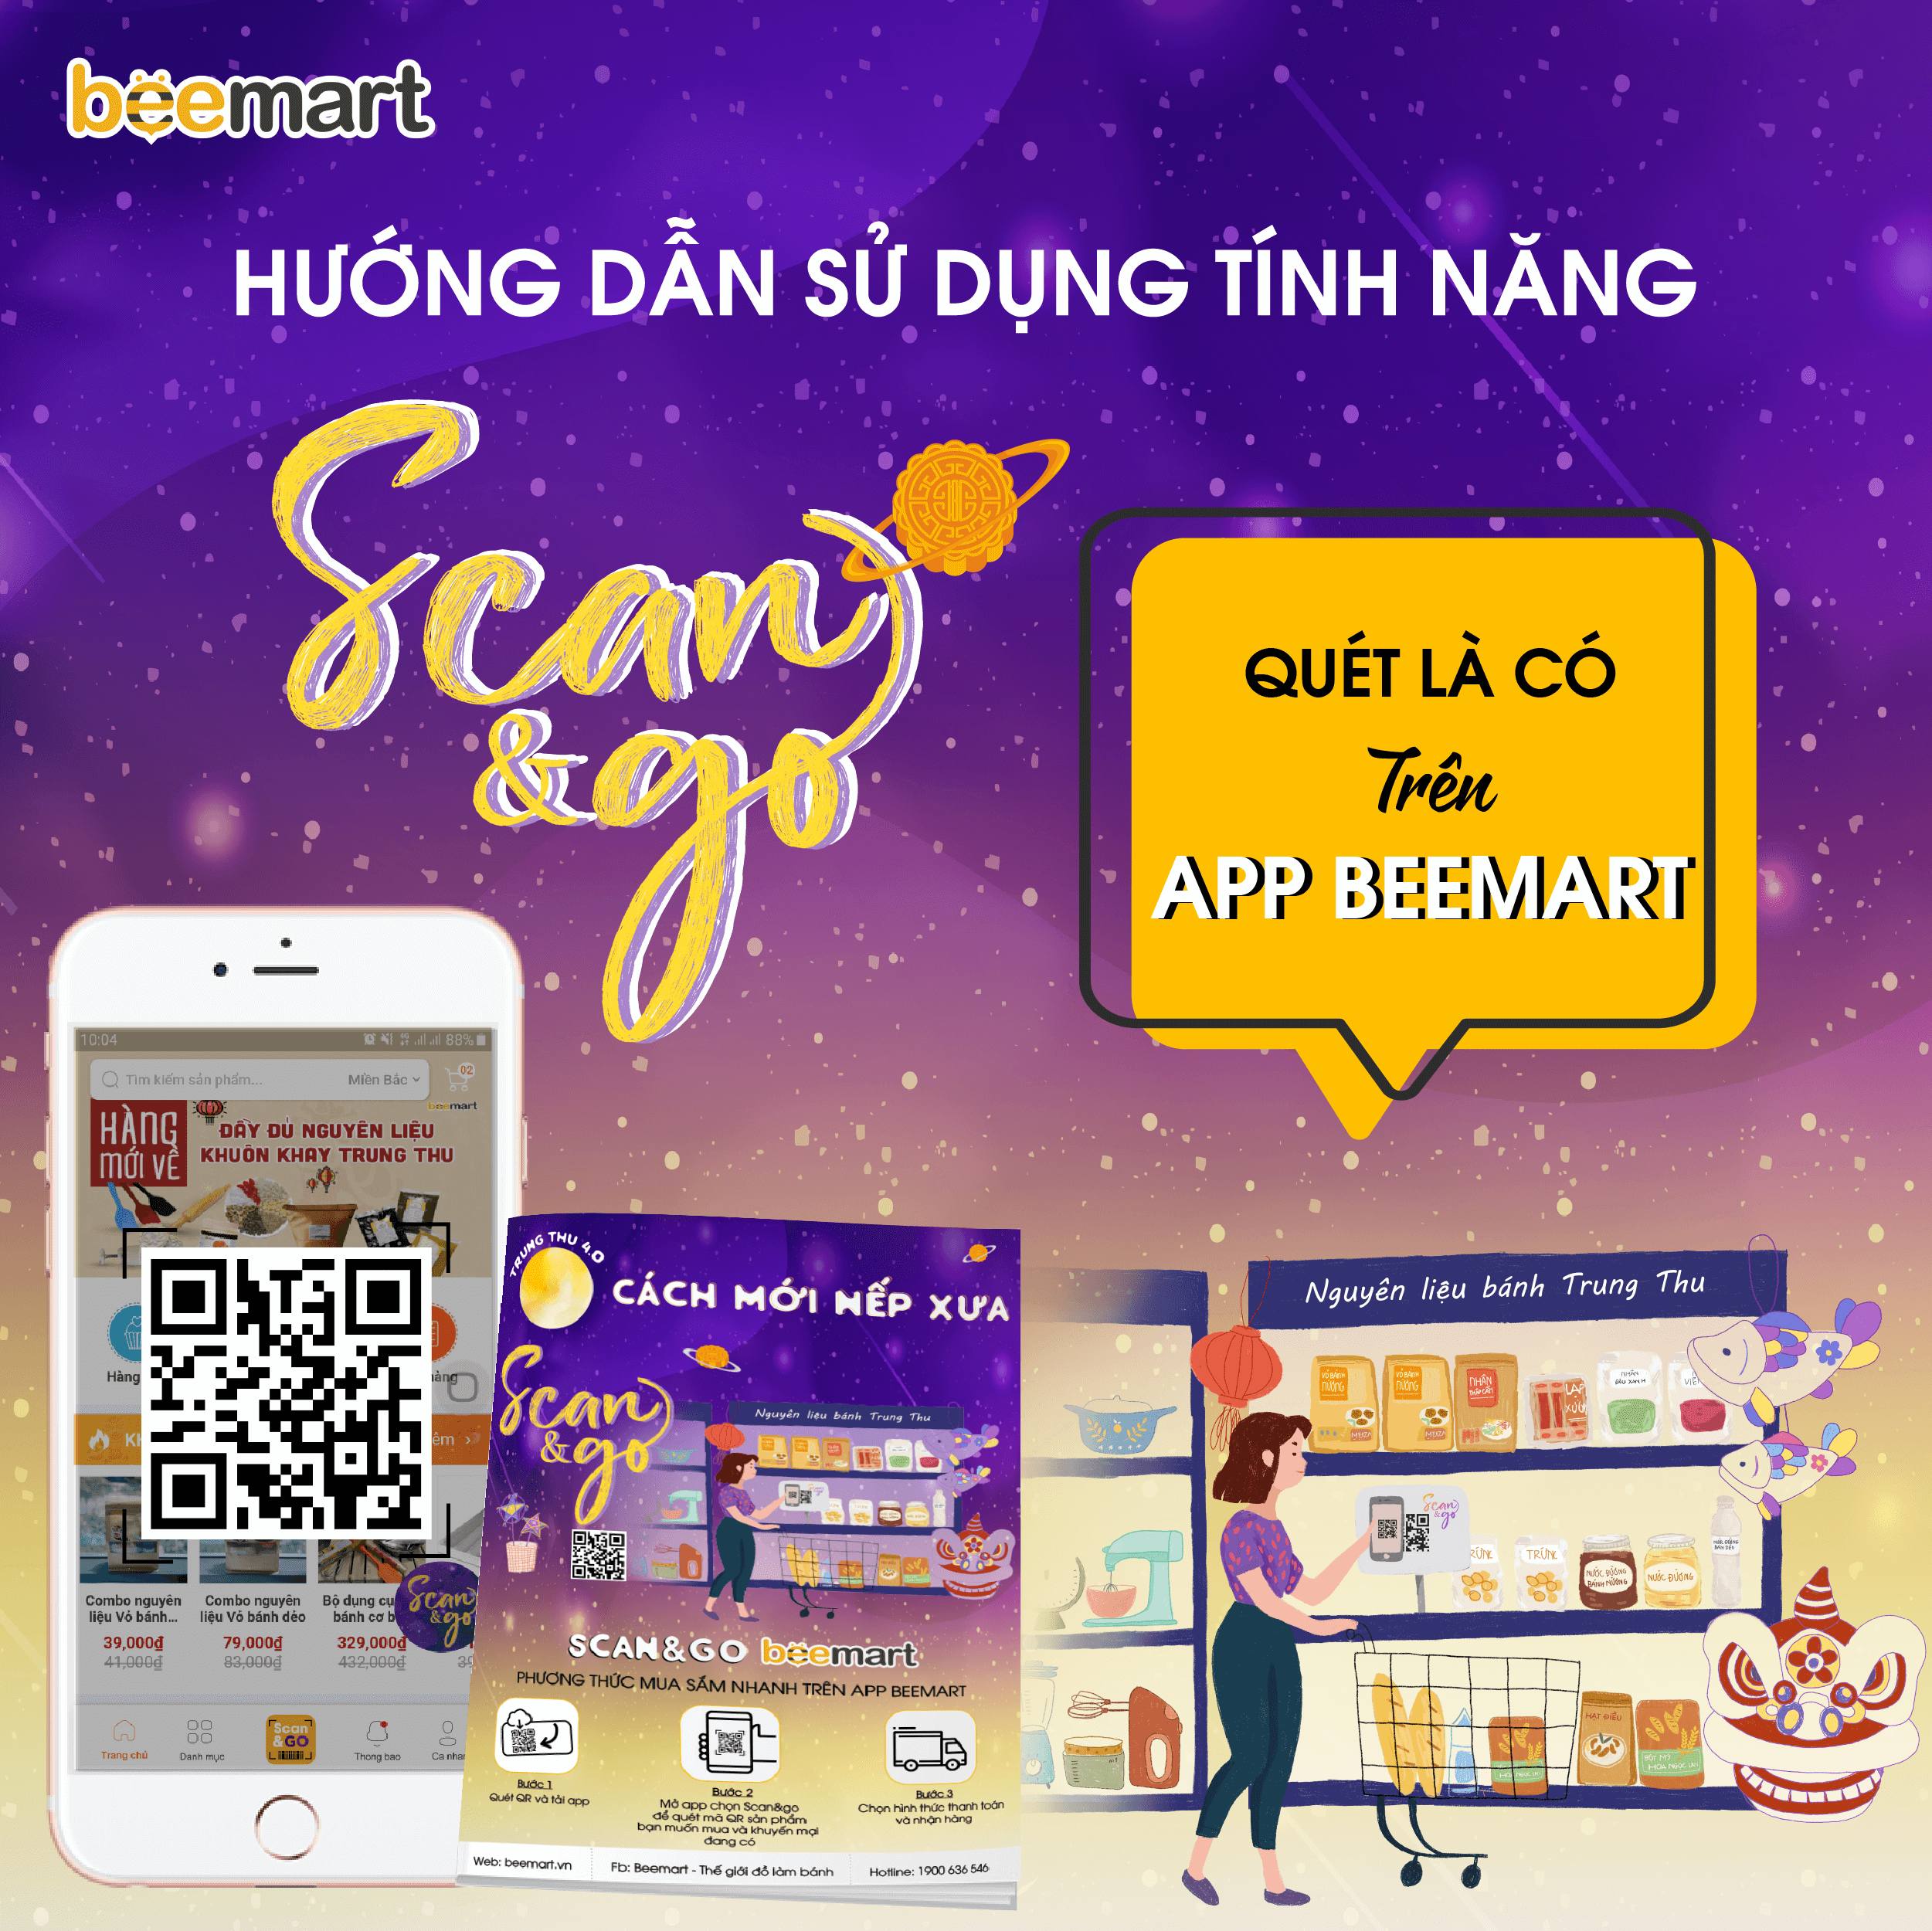 Hướng dẫn sử dụng tính năng Scan & Go - Quét là có trên App Beemart